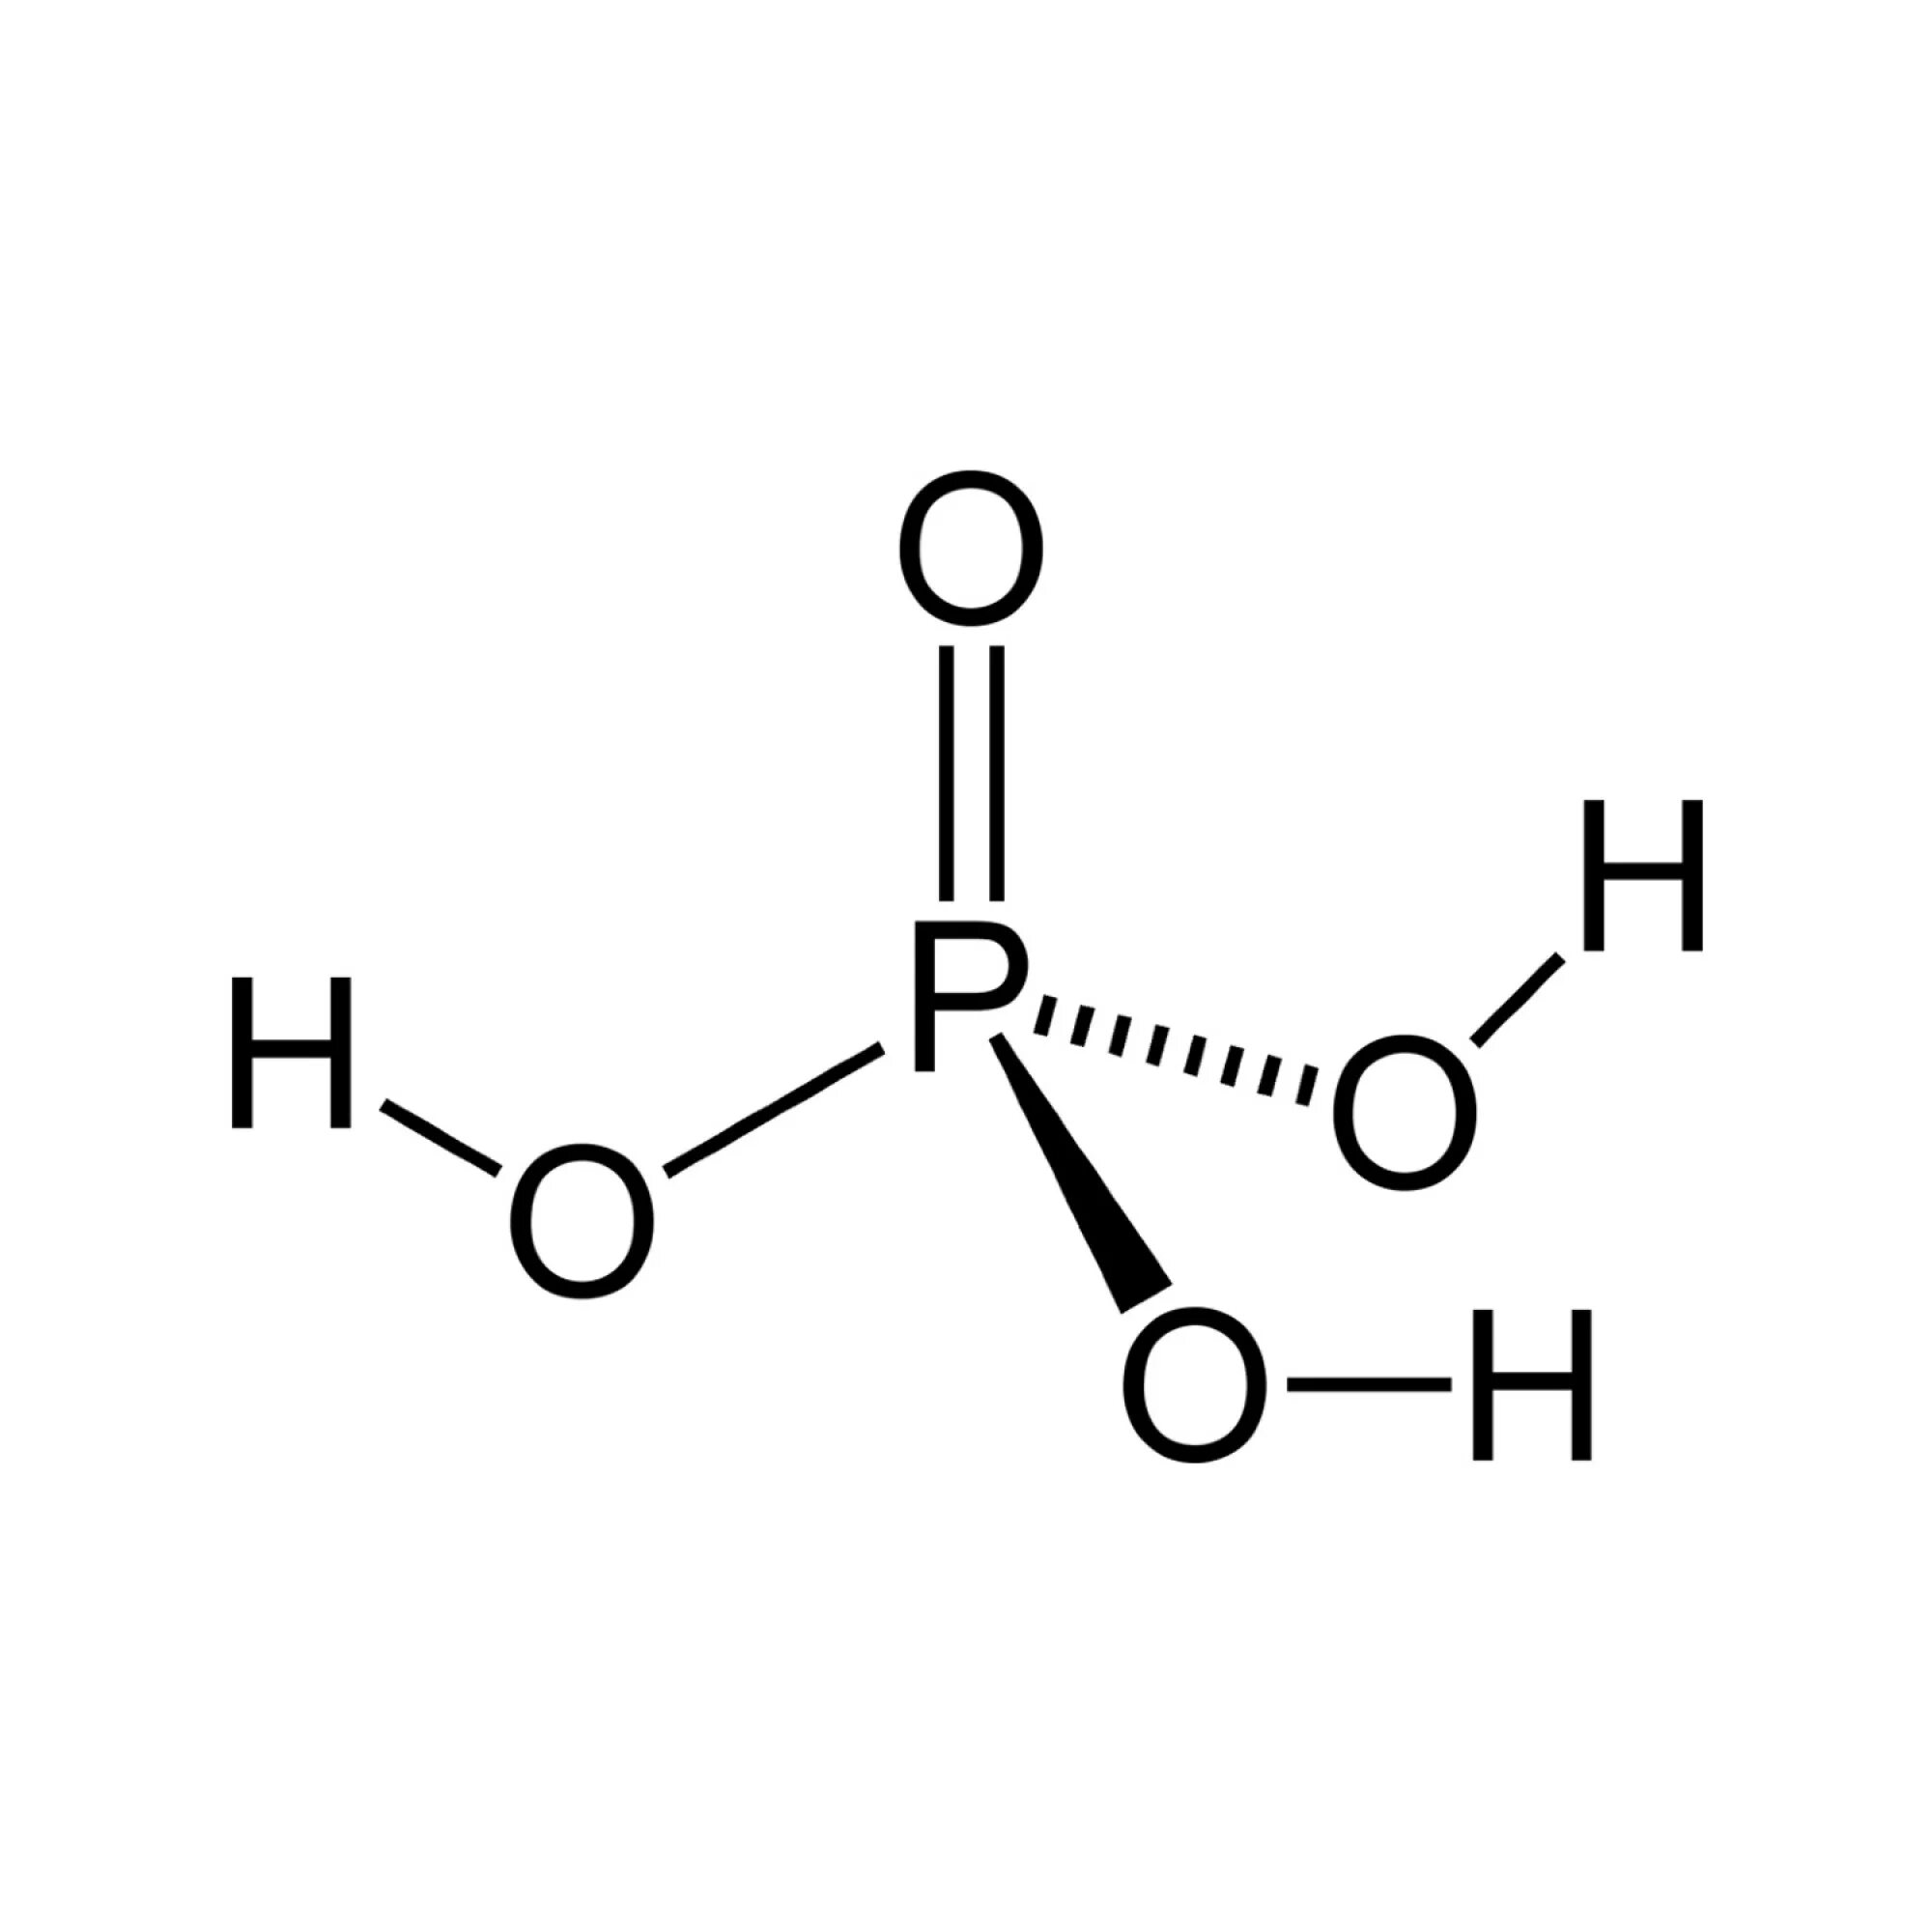 Ортофосфорная кислота графическая формула. Ортофосфорная кислота термическая. Ортофосфорная кислота 85%. Молекулярная формула муравьиной кислоты. Структурные формулы кислот фосфора